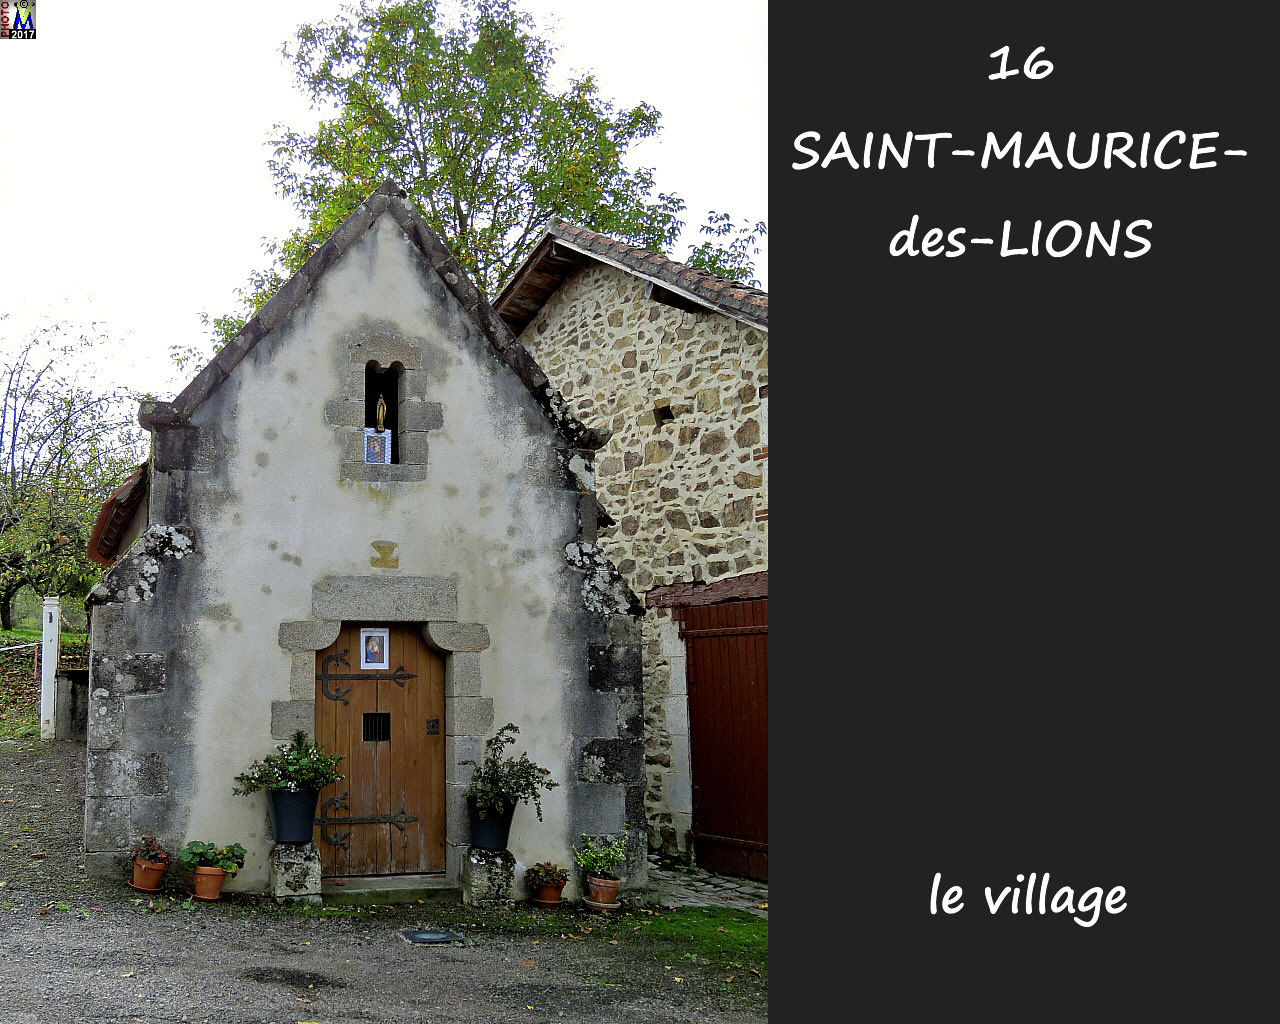 16StMAURICE-LIONS_village_1004.jpg